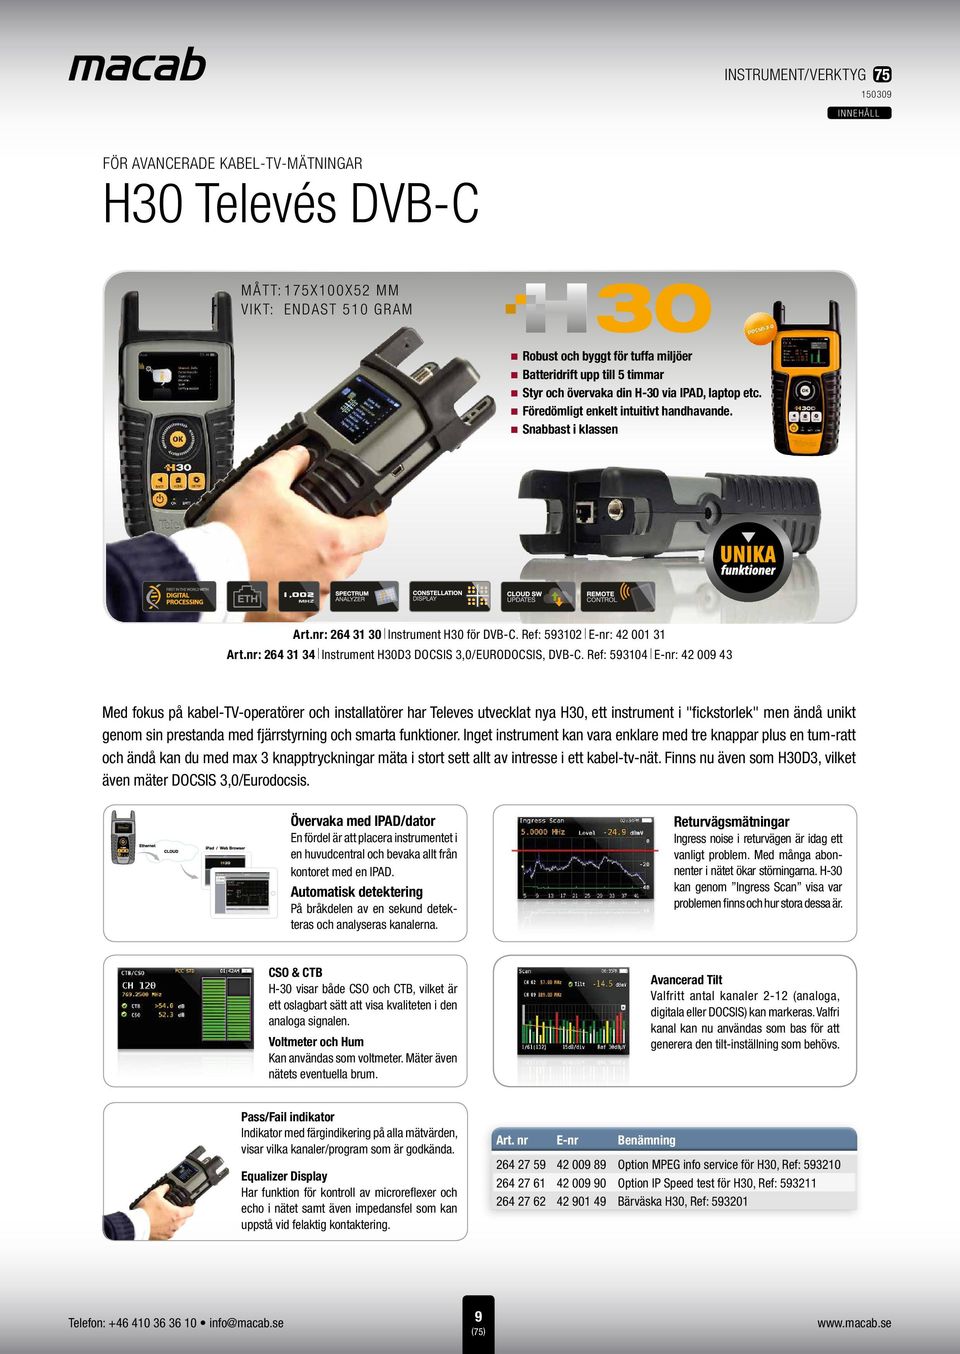 nr: 264 31 34 Instrument H30D3 DOCSIS 3,0/EURODOCSIS, DVB-C.